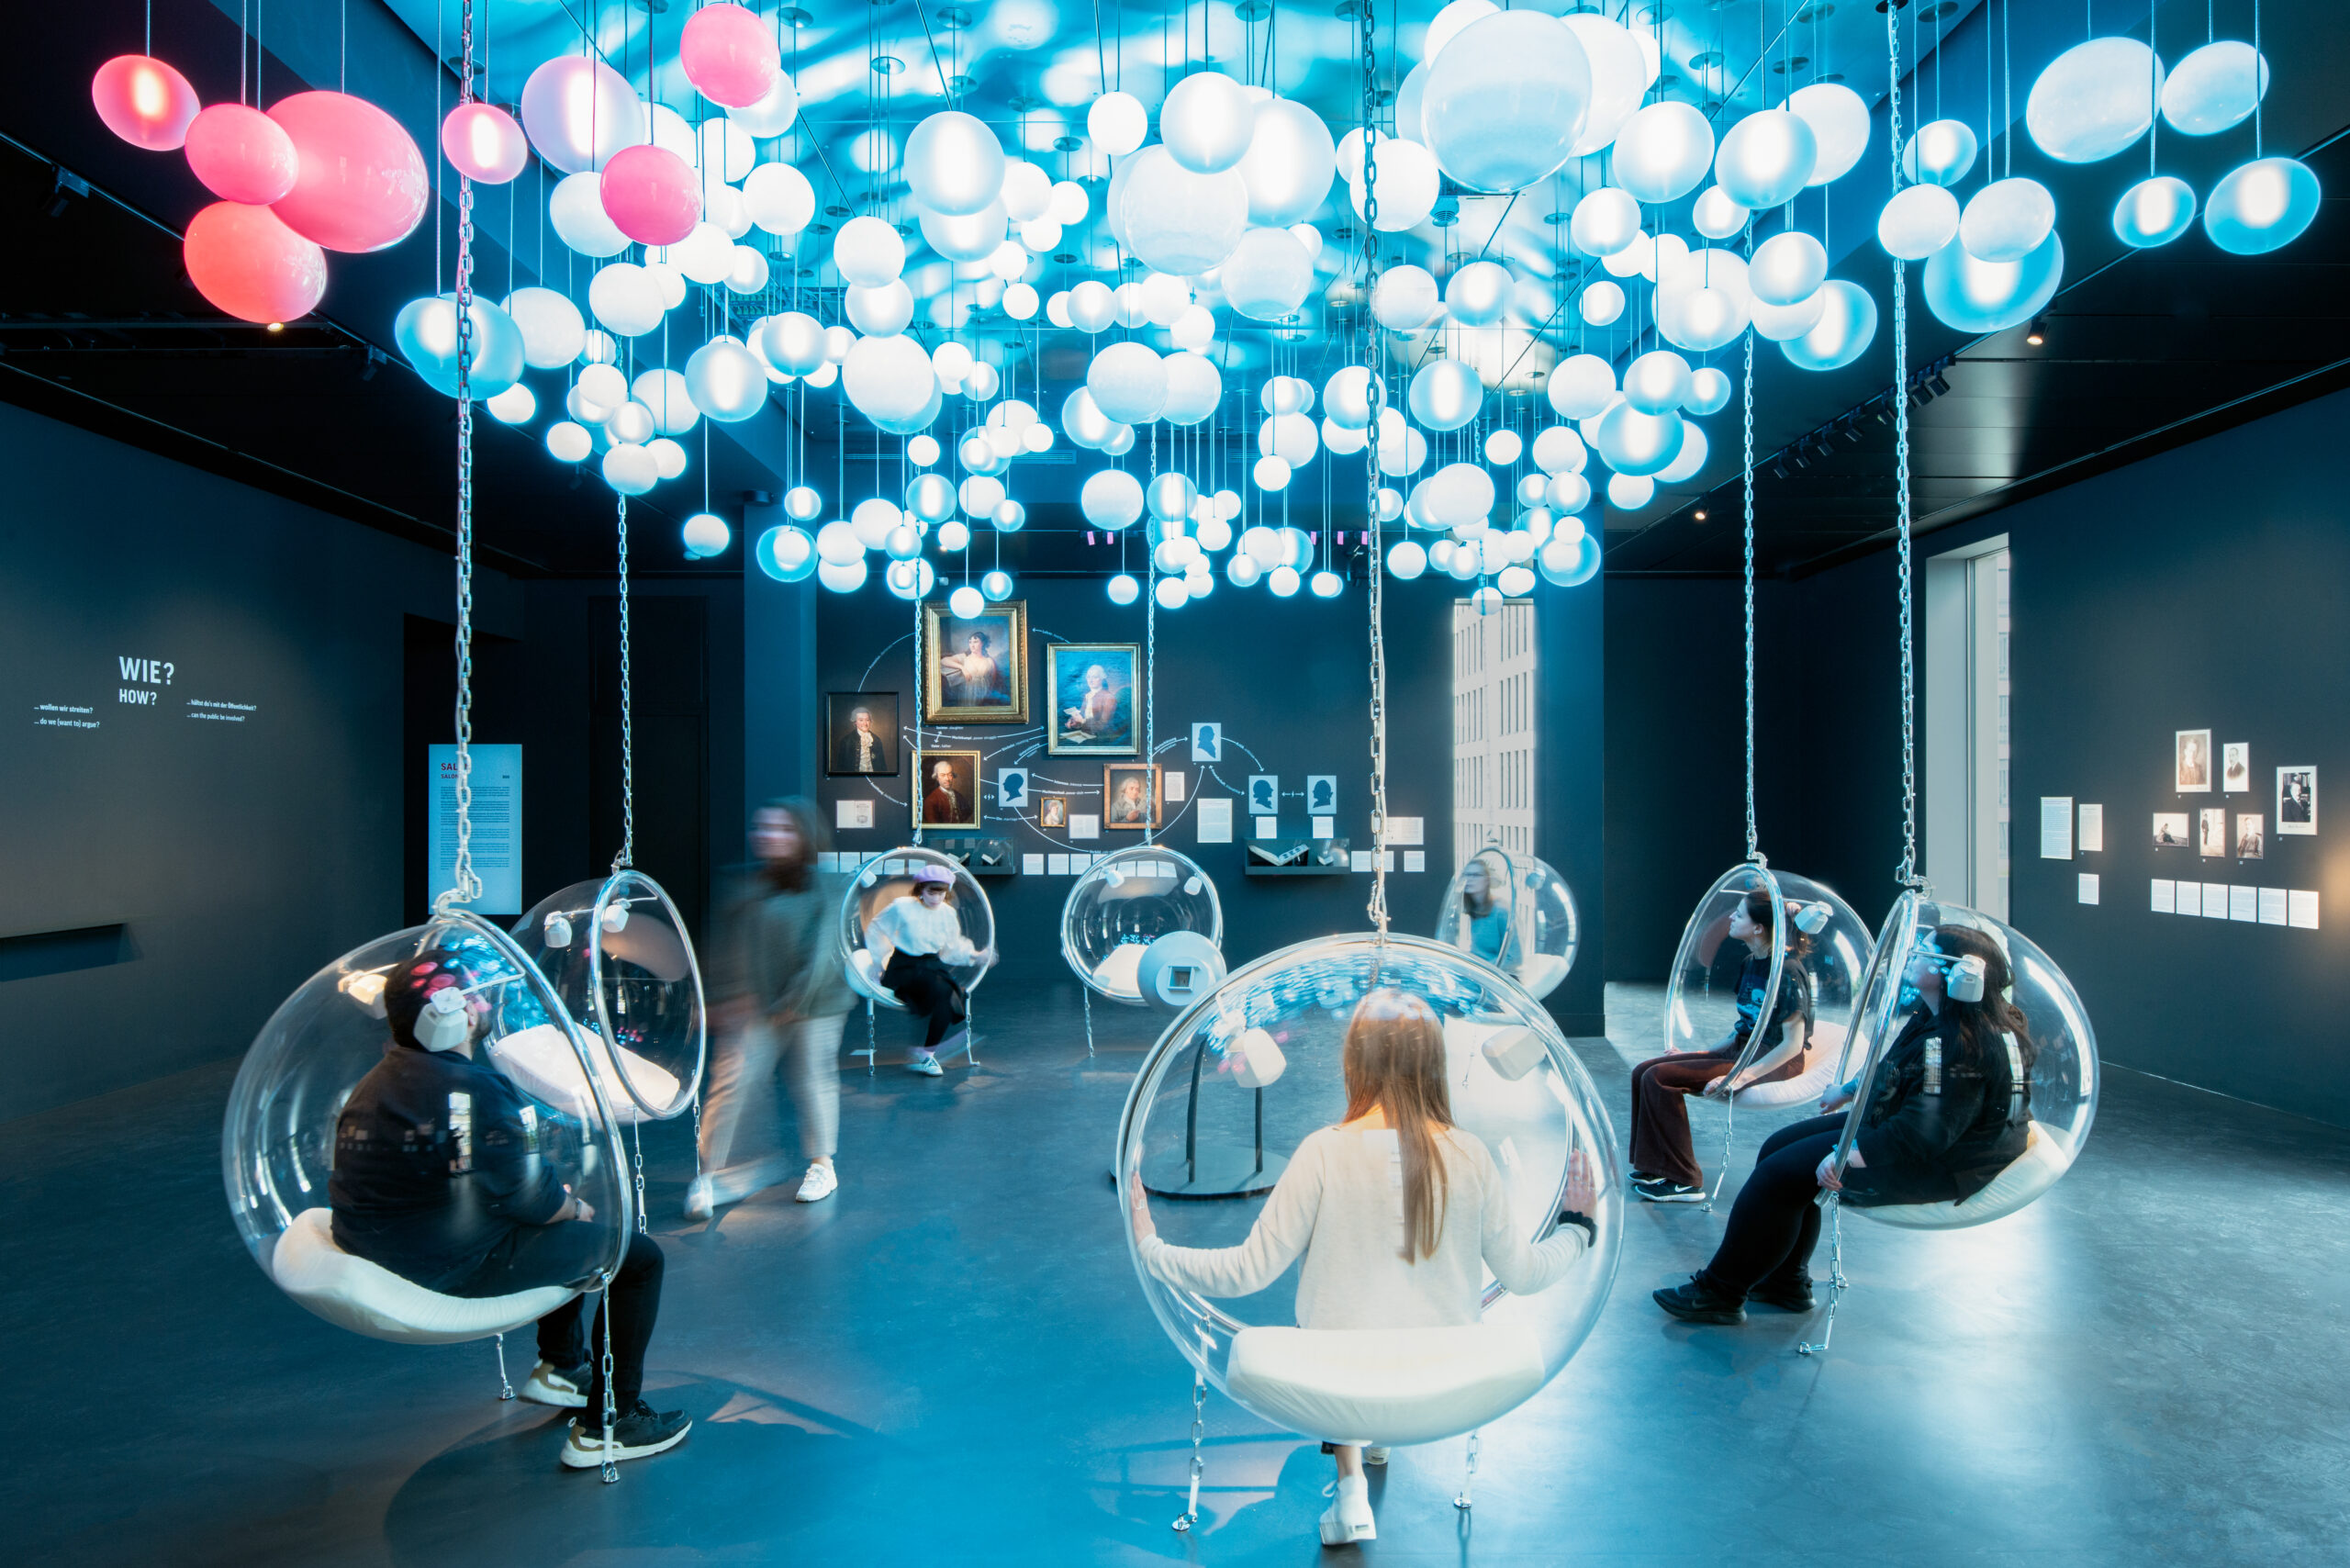 Der Raum „Salon“ ist durch zahlreiche Kugel-Lampen an der Decke beleuchtet. Museumsbesucher*innen sitzen in durchsichtigen, kugelförmigen Hängesesseln und tragen große Kopfhörer. 